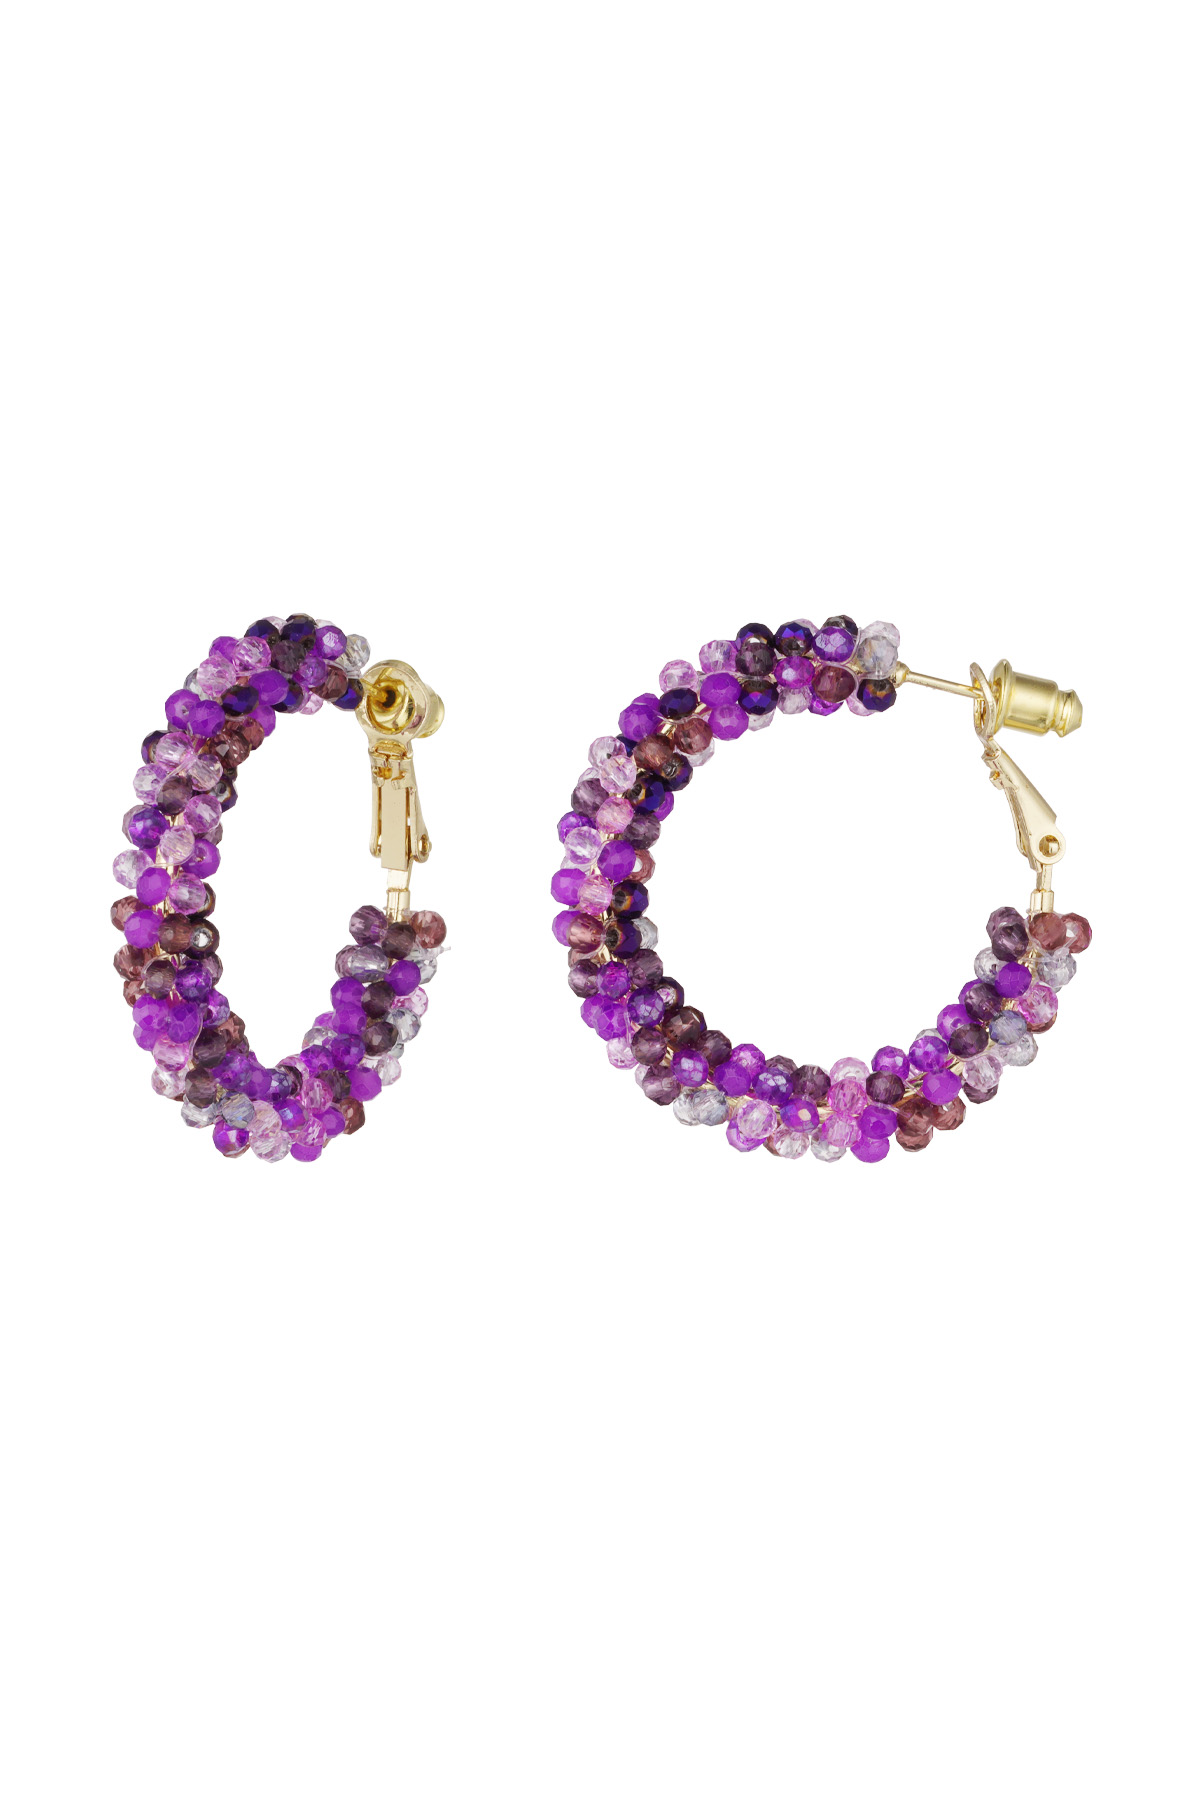 Boucles d'oreilles perles de verre automne - violet